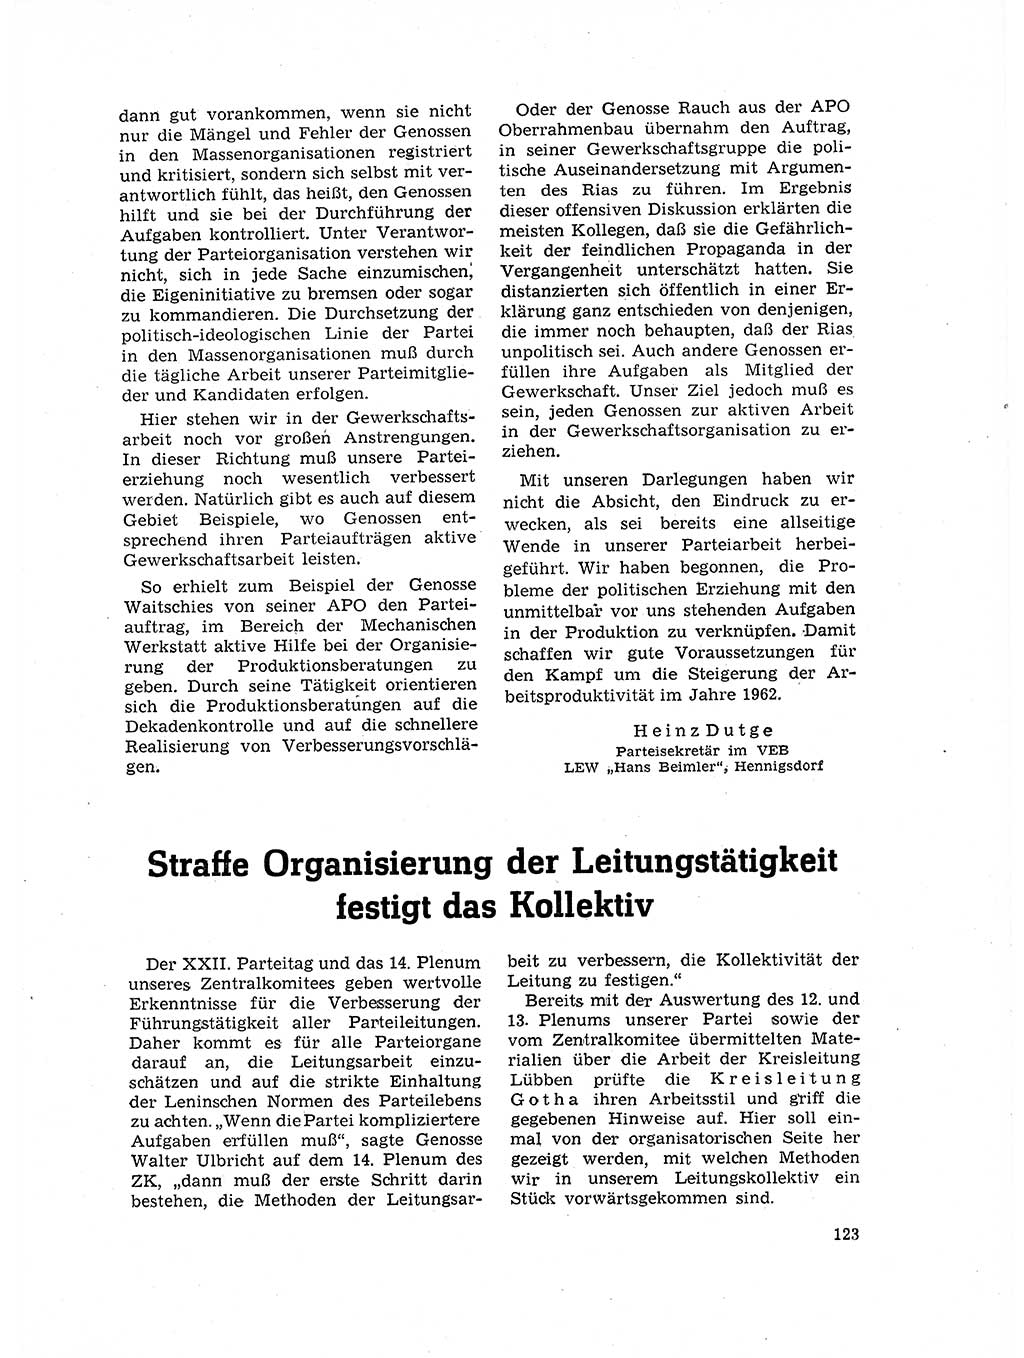 Neuer Weg (NW), Organ des Zentralkomitees (ZK) der SED (Sozialistische Einheitspartei Deutschlands) für Fragen des Parteilebens, 17. Jahrgang [Deutsche Demokratische Republik (DDR)] 1962, Seite 123 (NW ZK SED DDR 1962, S. 123)